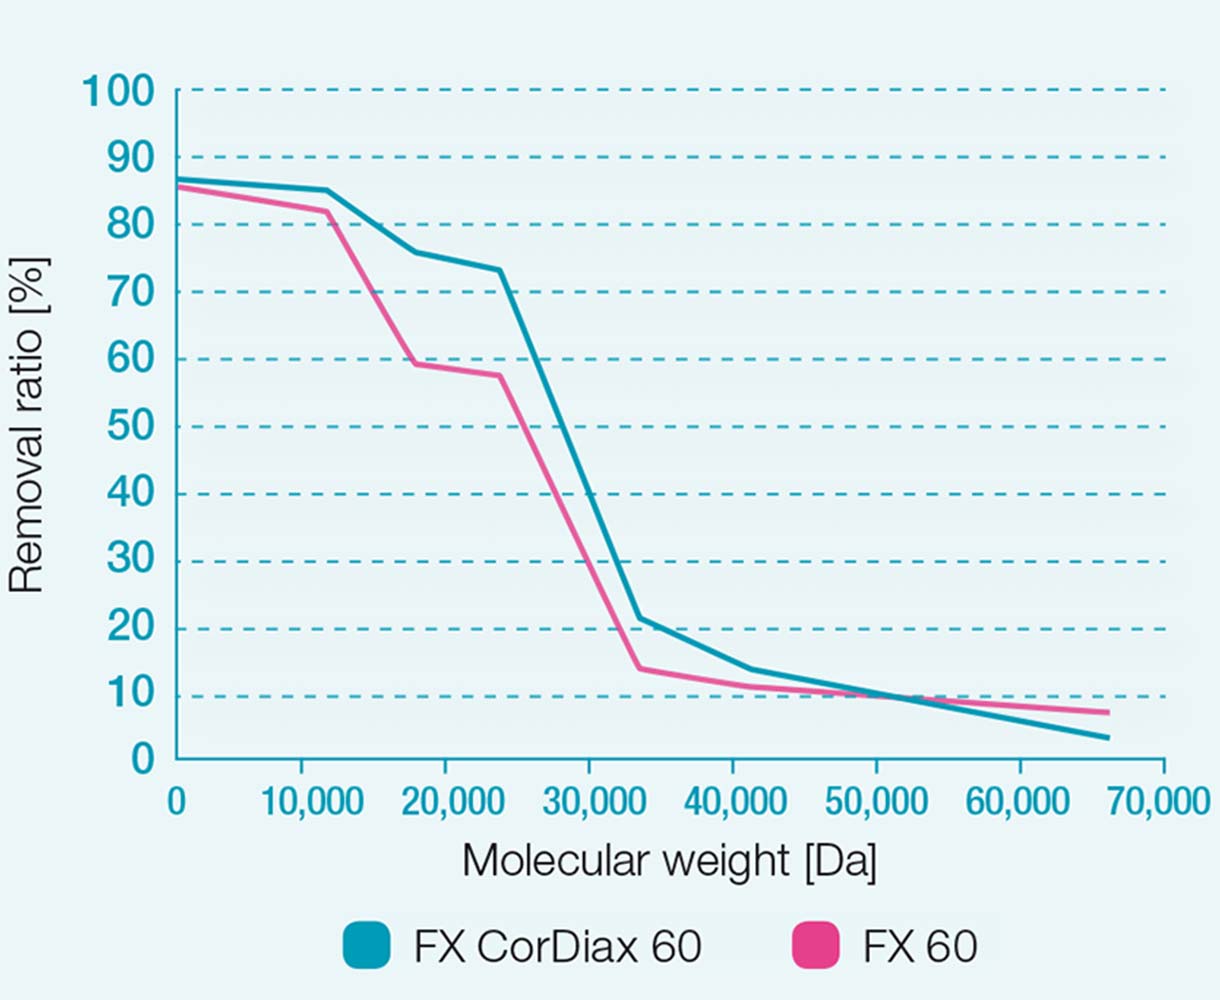 Entfernungsraten der Dialysatoren FX 60 und FX CorDiax 60